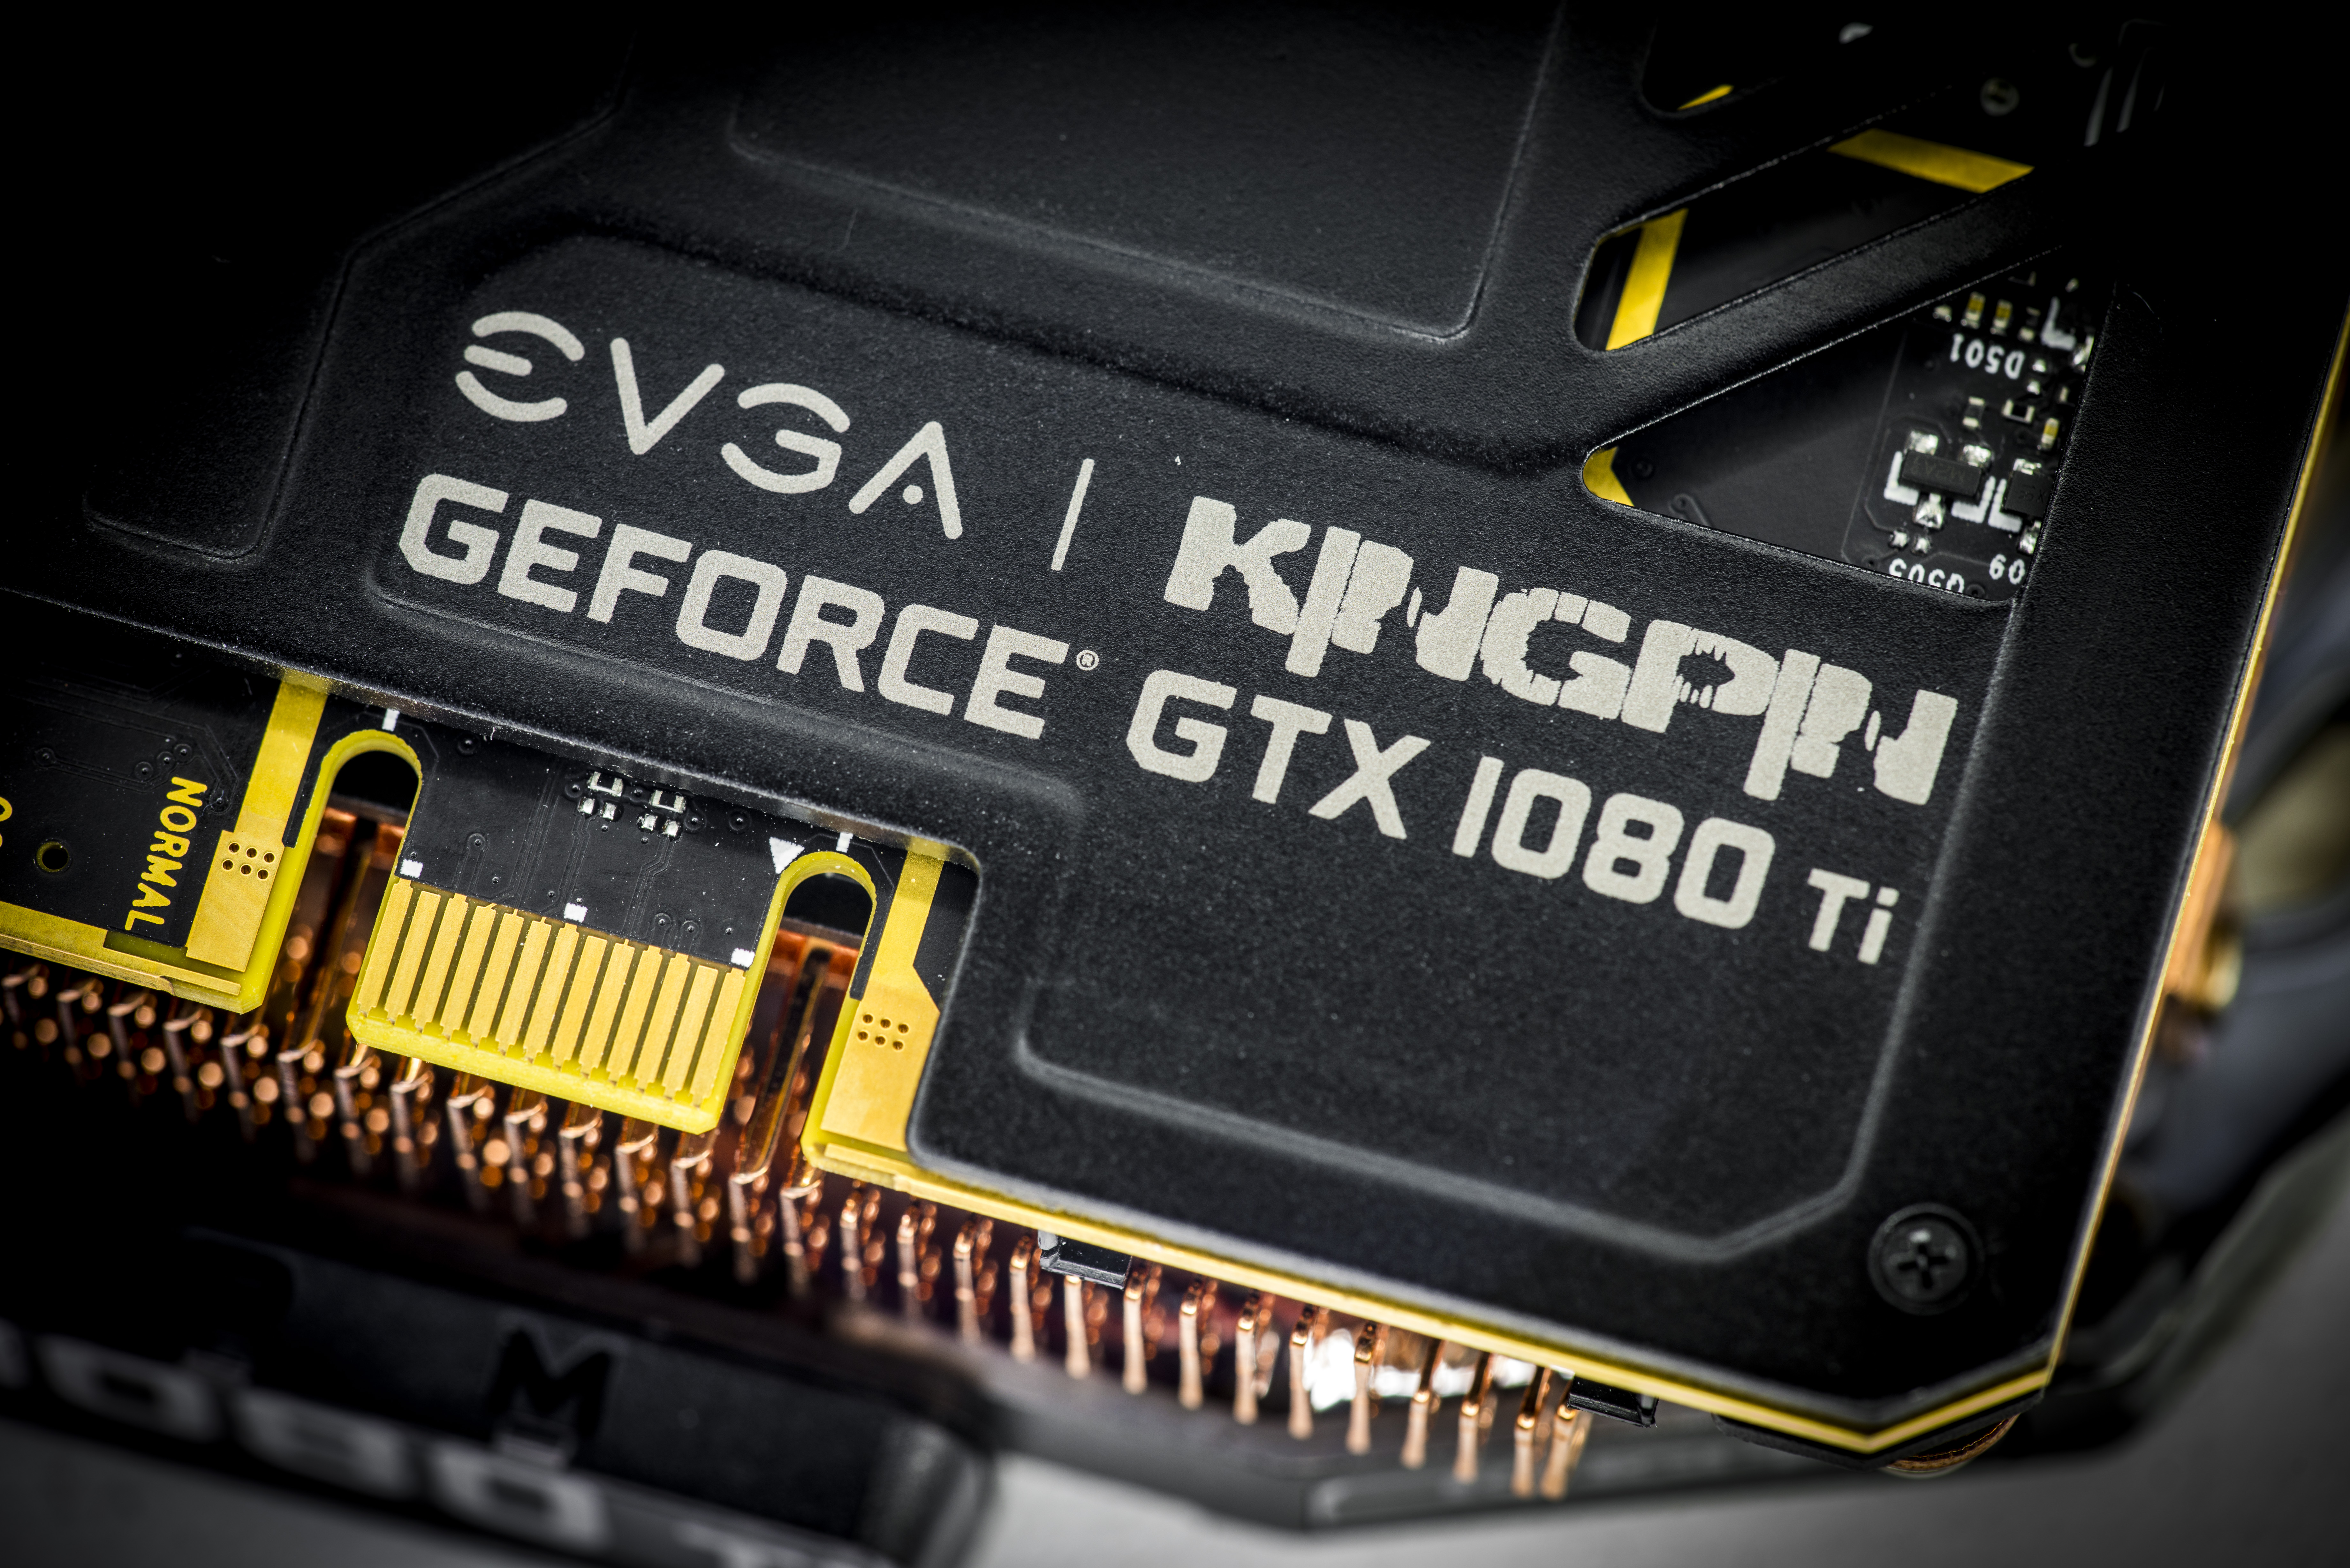 det er nytteløst maskinskriver Repaste xDevs.com | Extreme OC Guide for EVGA GeForce GTX 1080 Ti K|NGP|N Edition  graphics card